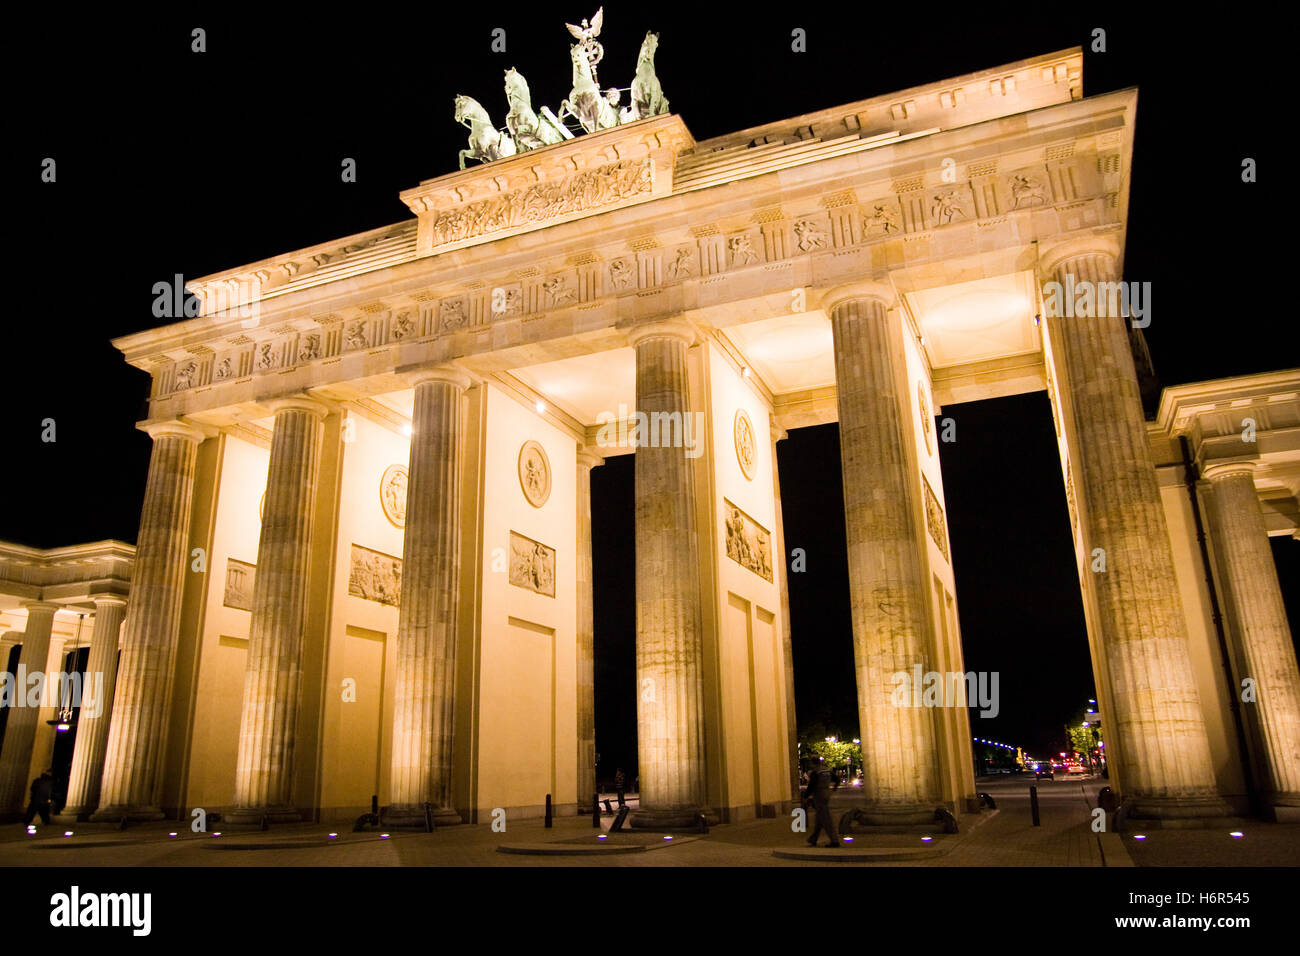 Denkmal Nacht Fotografie Tourismus sightseeing Säule Berlin Frau Glanz strahlt helles lucent Licht ruhige helle schöne Stockfoto